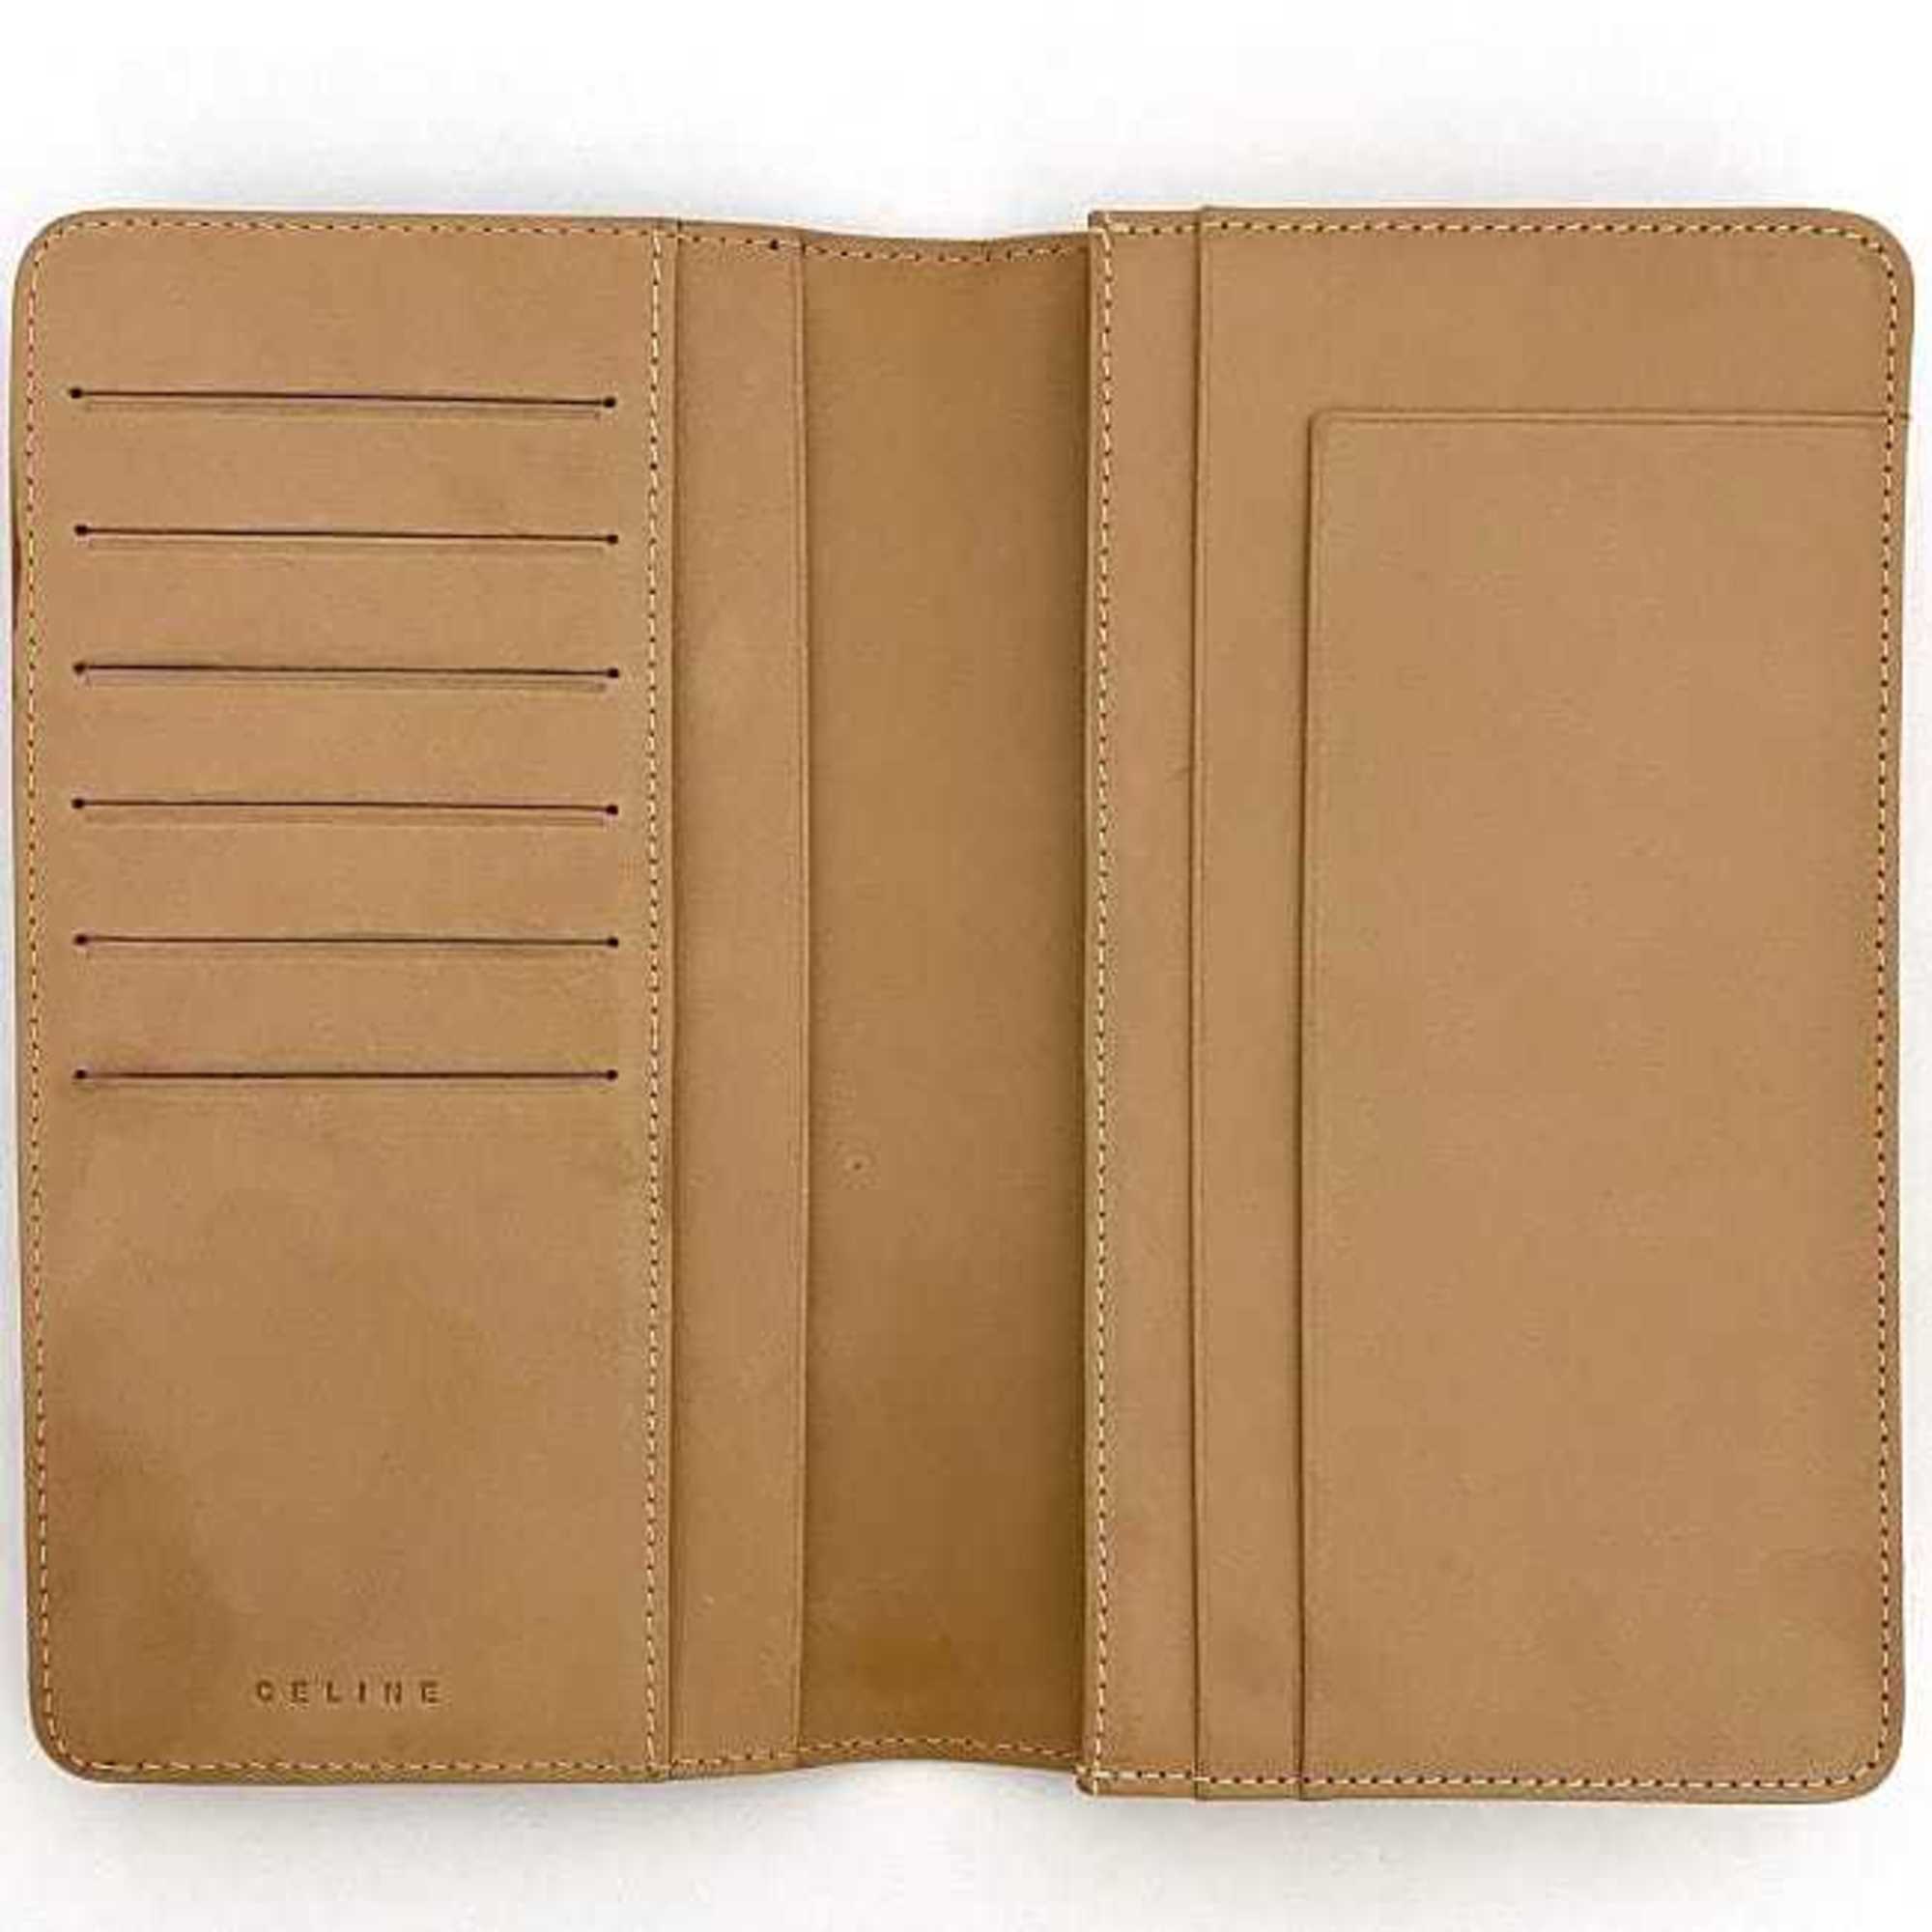 CELINE Bi-fold Long Wallet Brown Macadam ec-20447 Billfold PVC Leather Women's